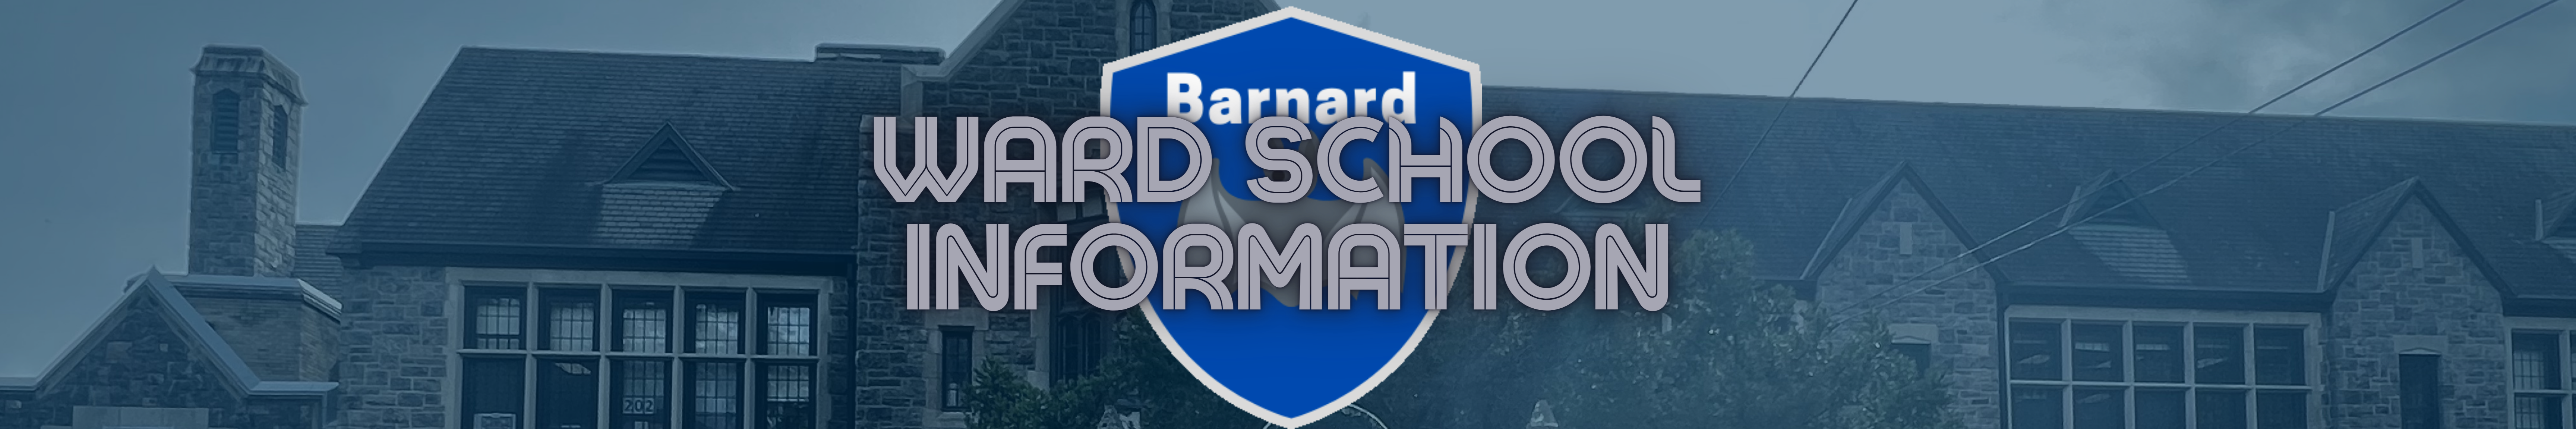 Ward School Information banner